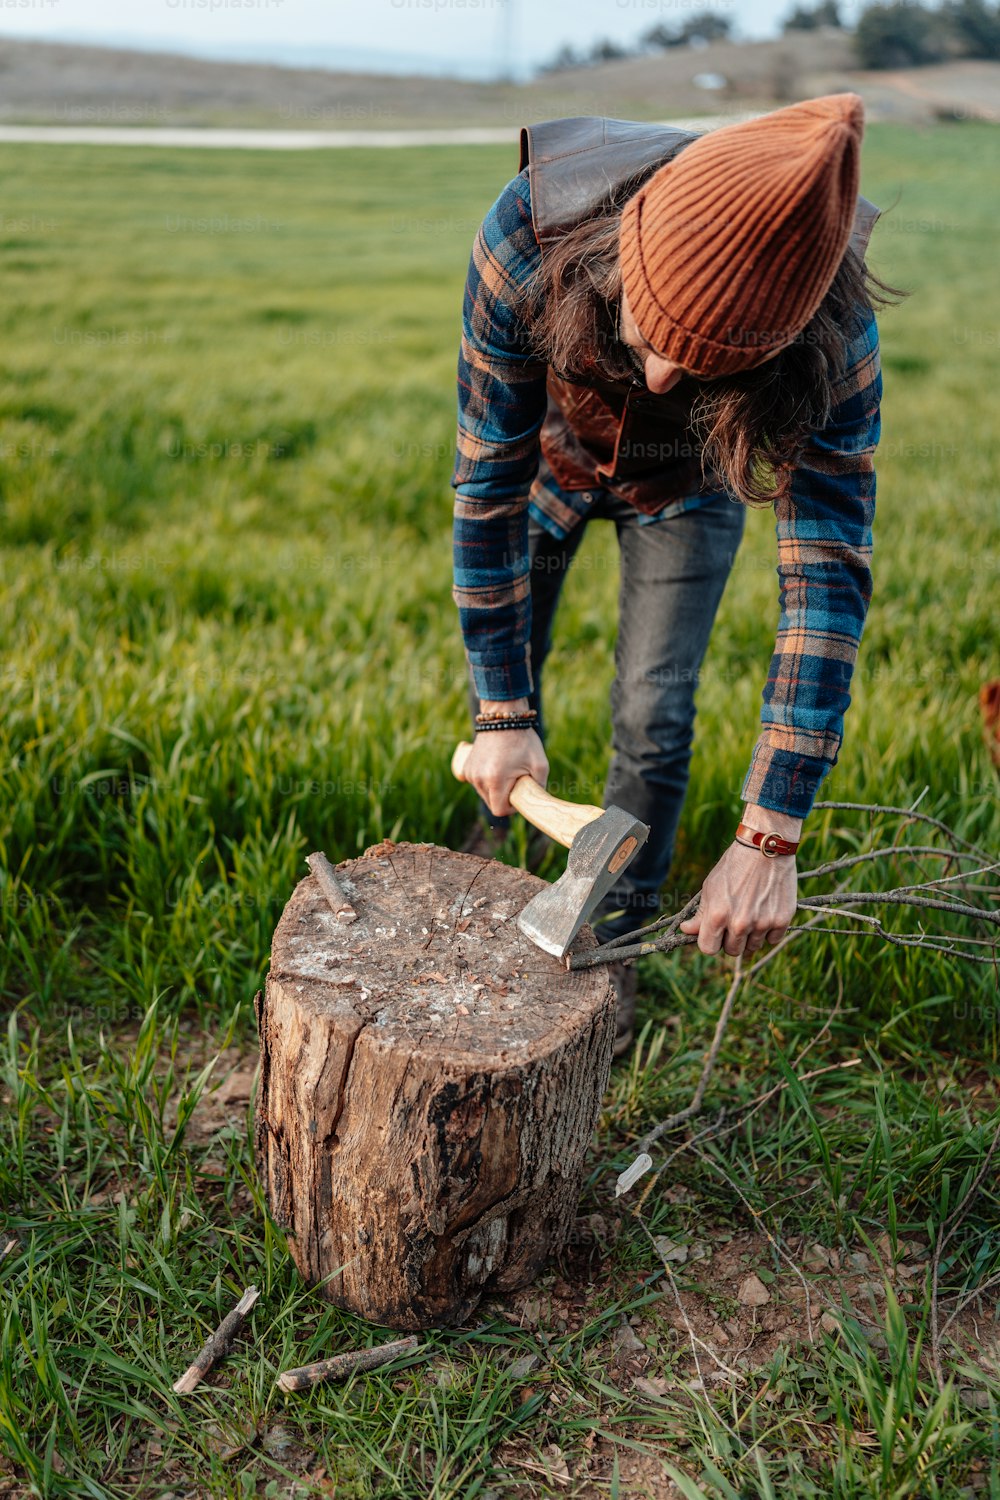 Ein Mann im karierten Hemd hackt einen Baumstumpf